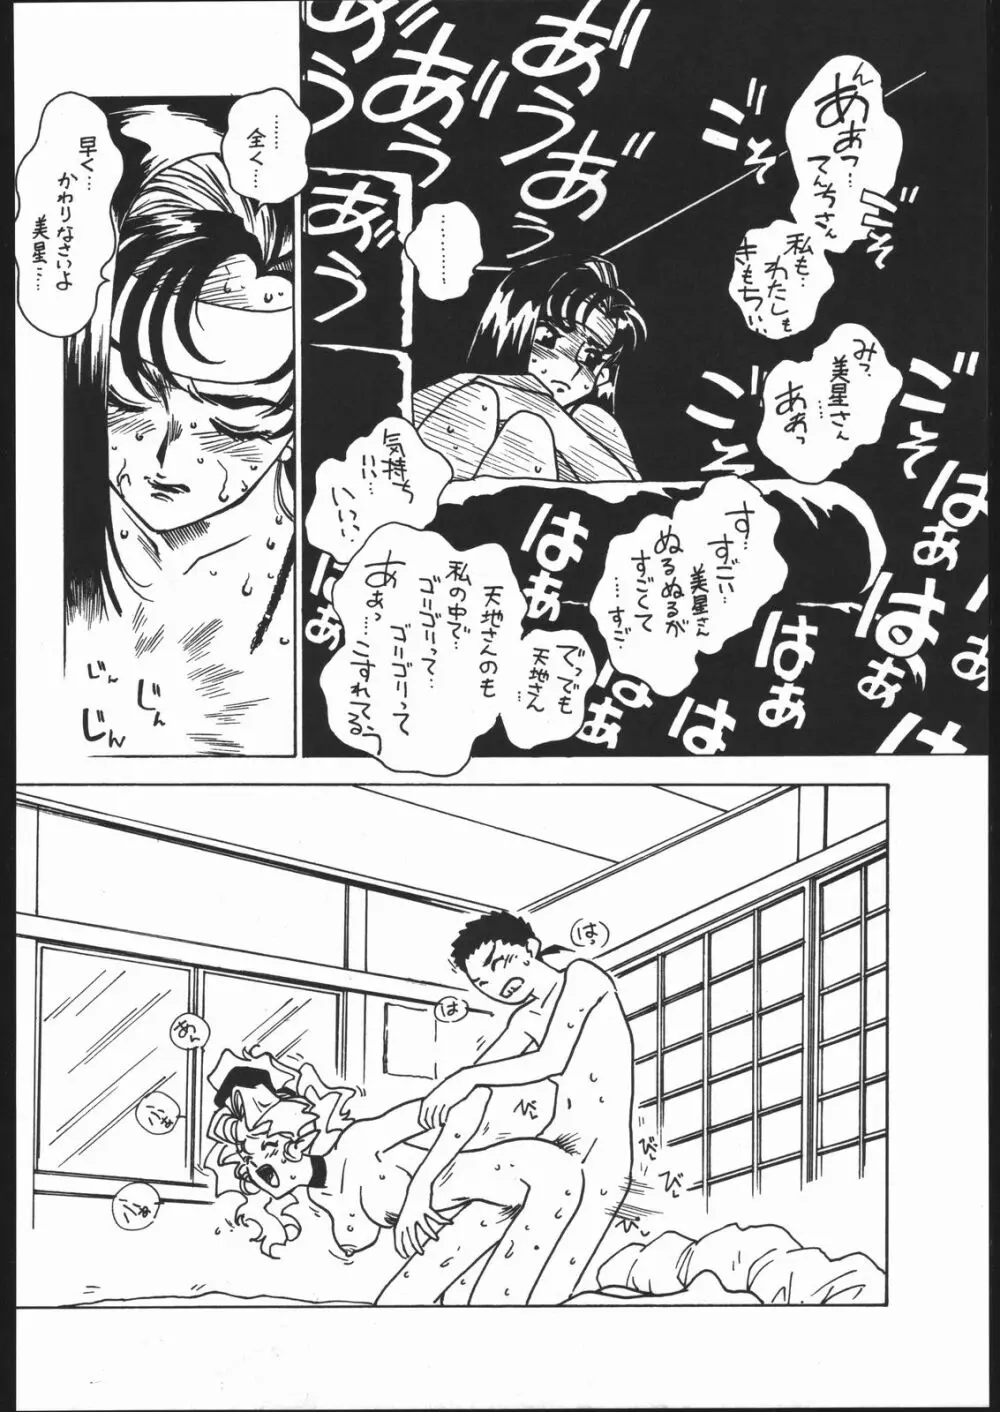 凶悪的指導 Vol.11 じゅんび号 Version 2 13ページ